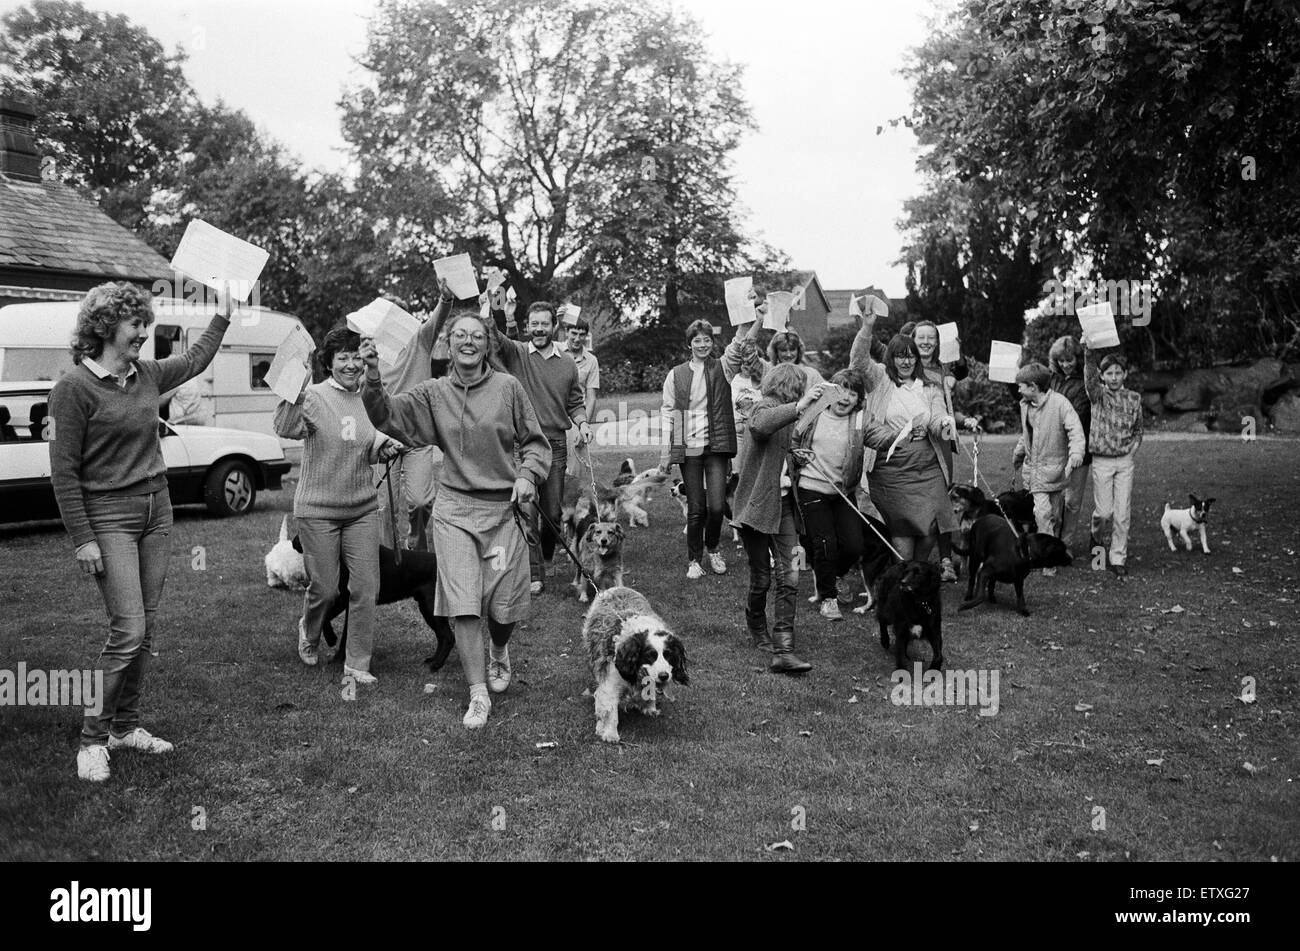 Passerelles de masse - vingt-quatre chiens et les marcheurs ont pris part à cette marche parrainée à Beaumont Park pour la direction générale de la RSPCA Huddersfield. Ils sont illustrés à partir de l'événement, qui s'attend à une hausse d'un peu plus de 500 €. 14 septembre 1986. Banque D'Images